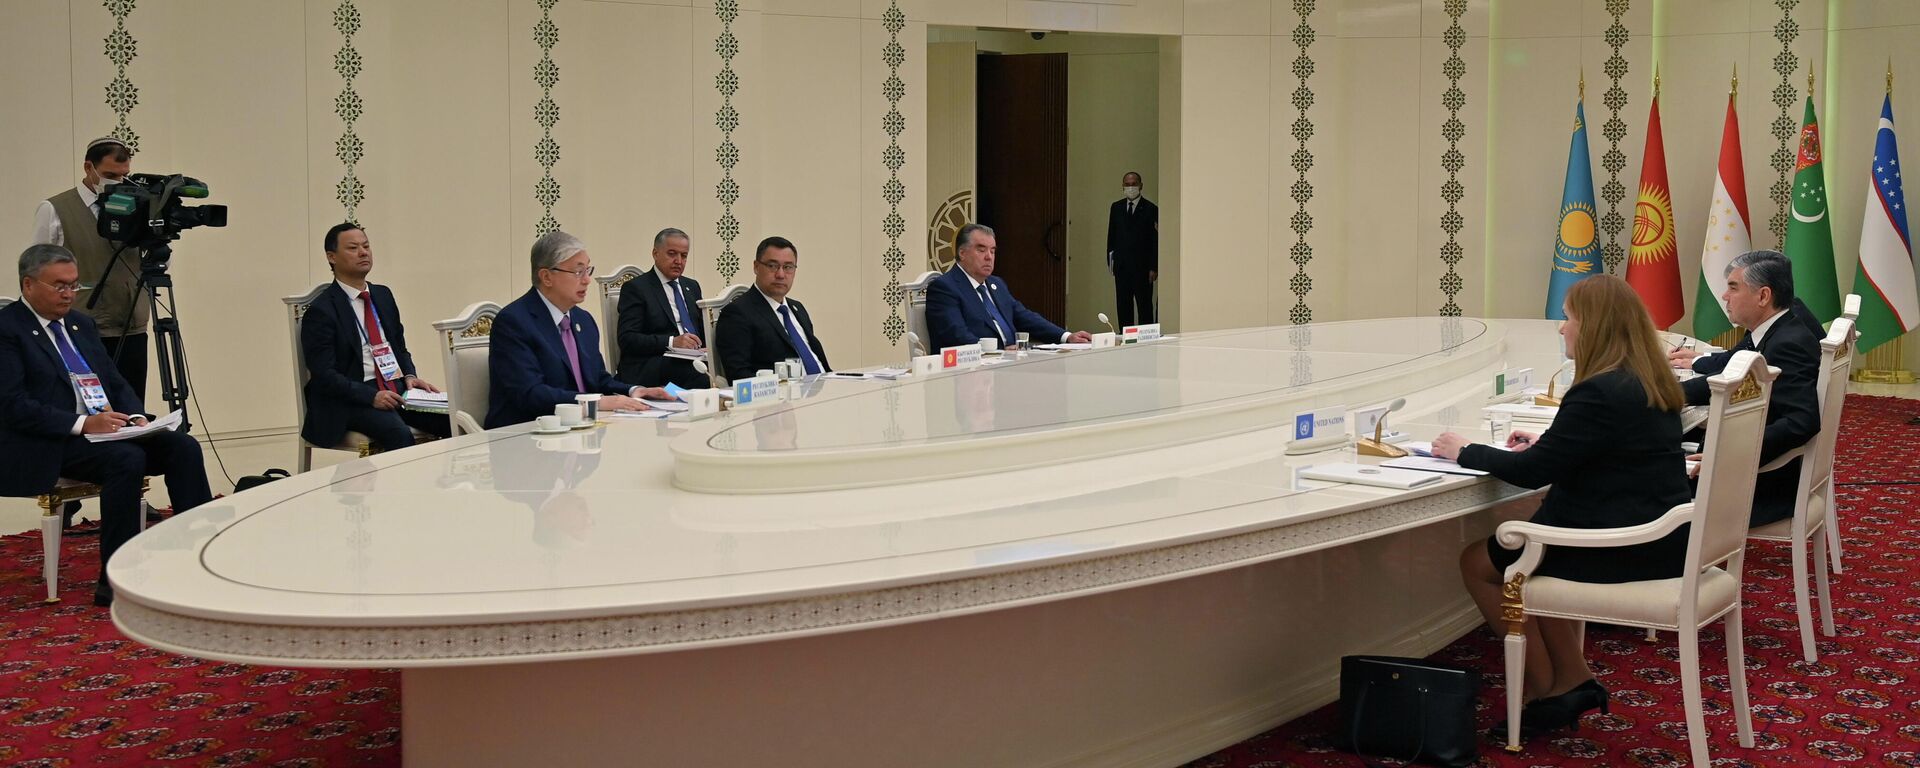 Саммит глав стран Центральной Азии в Туркменистане - Sputnik Таджикистан, 1920, 06.08.2021